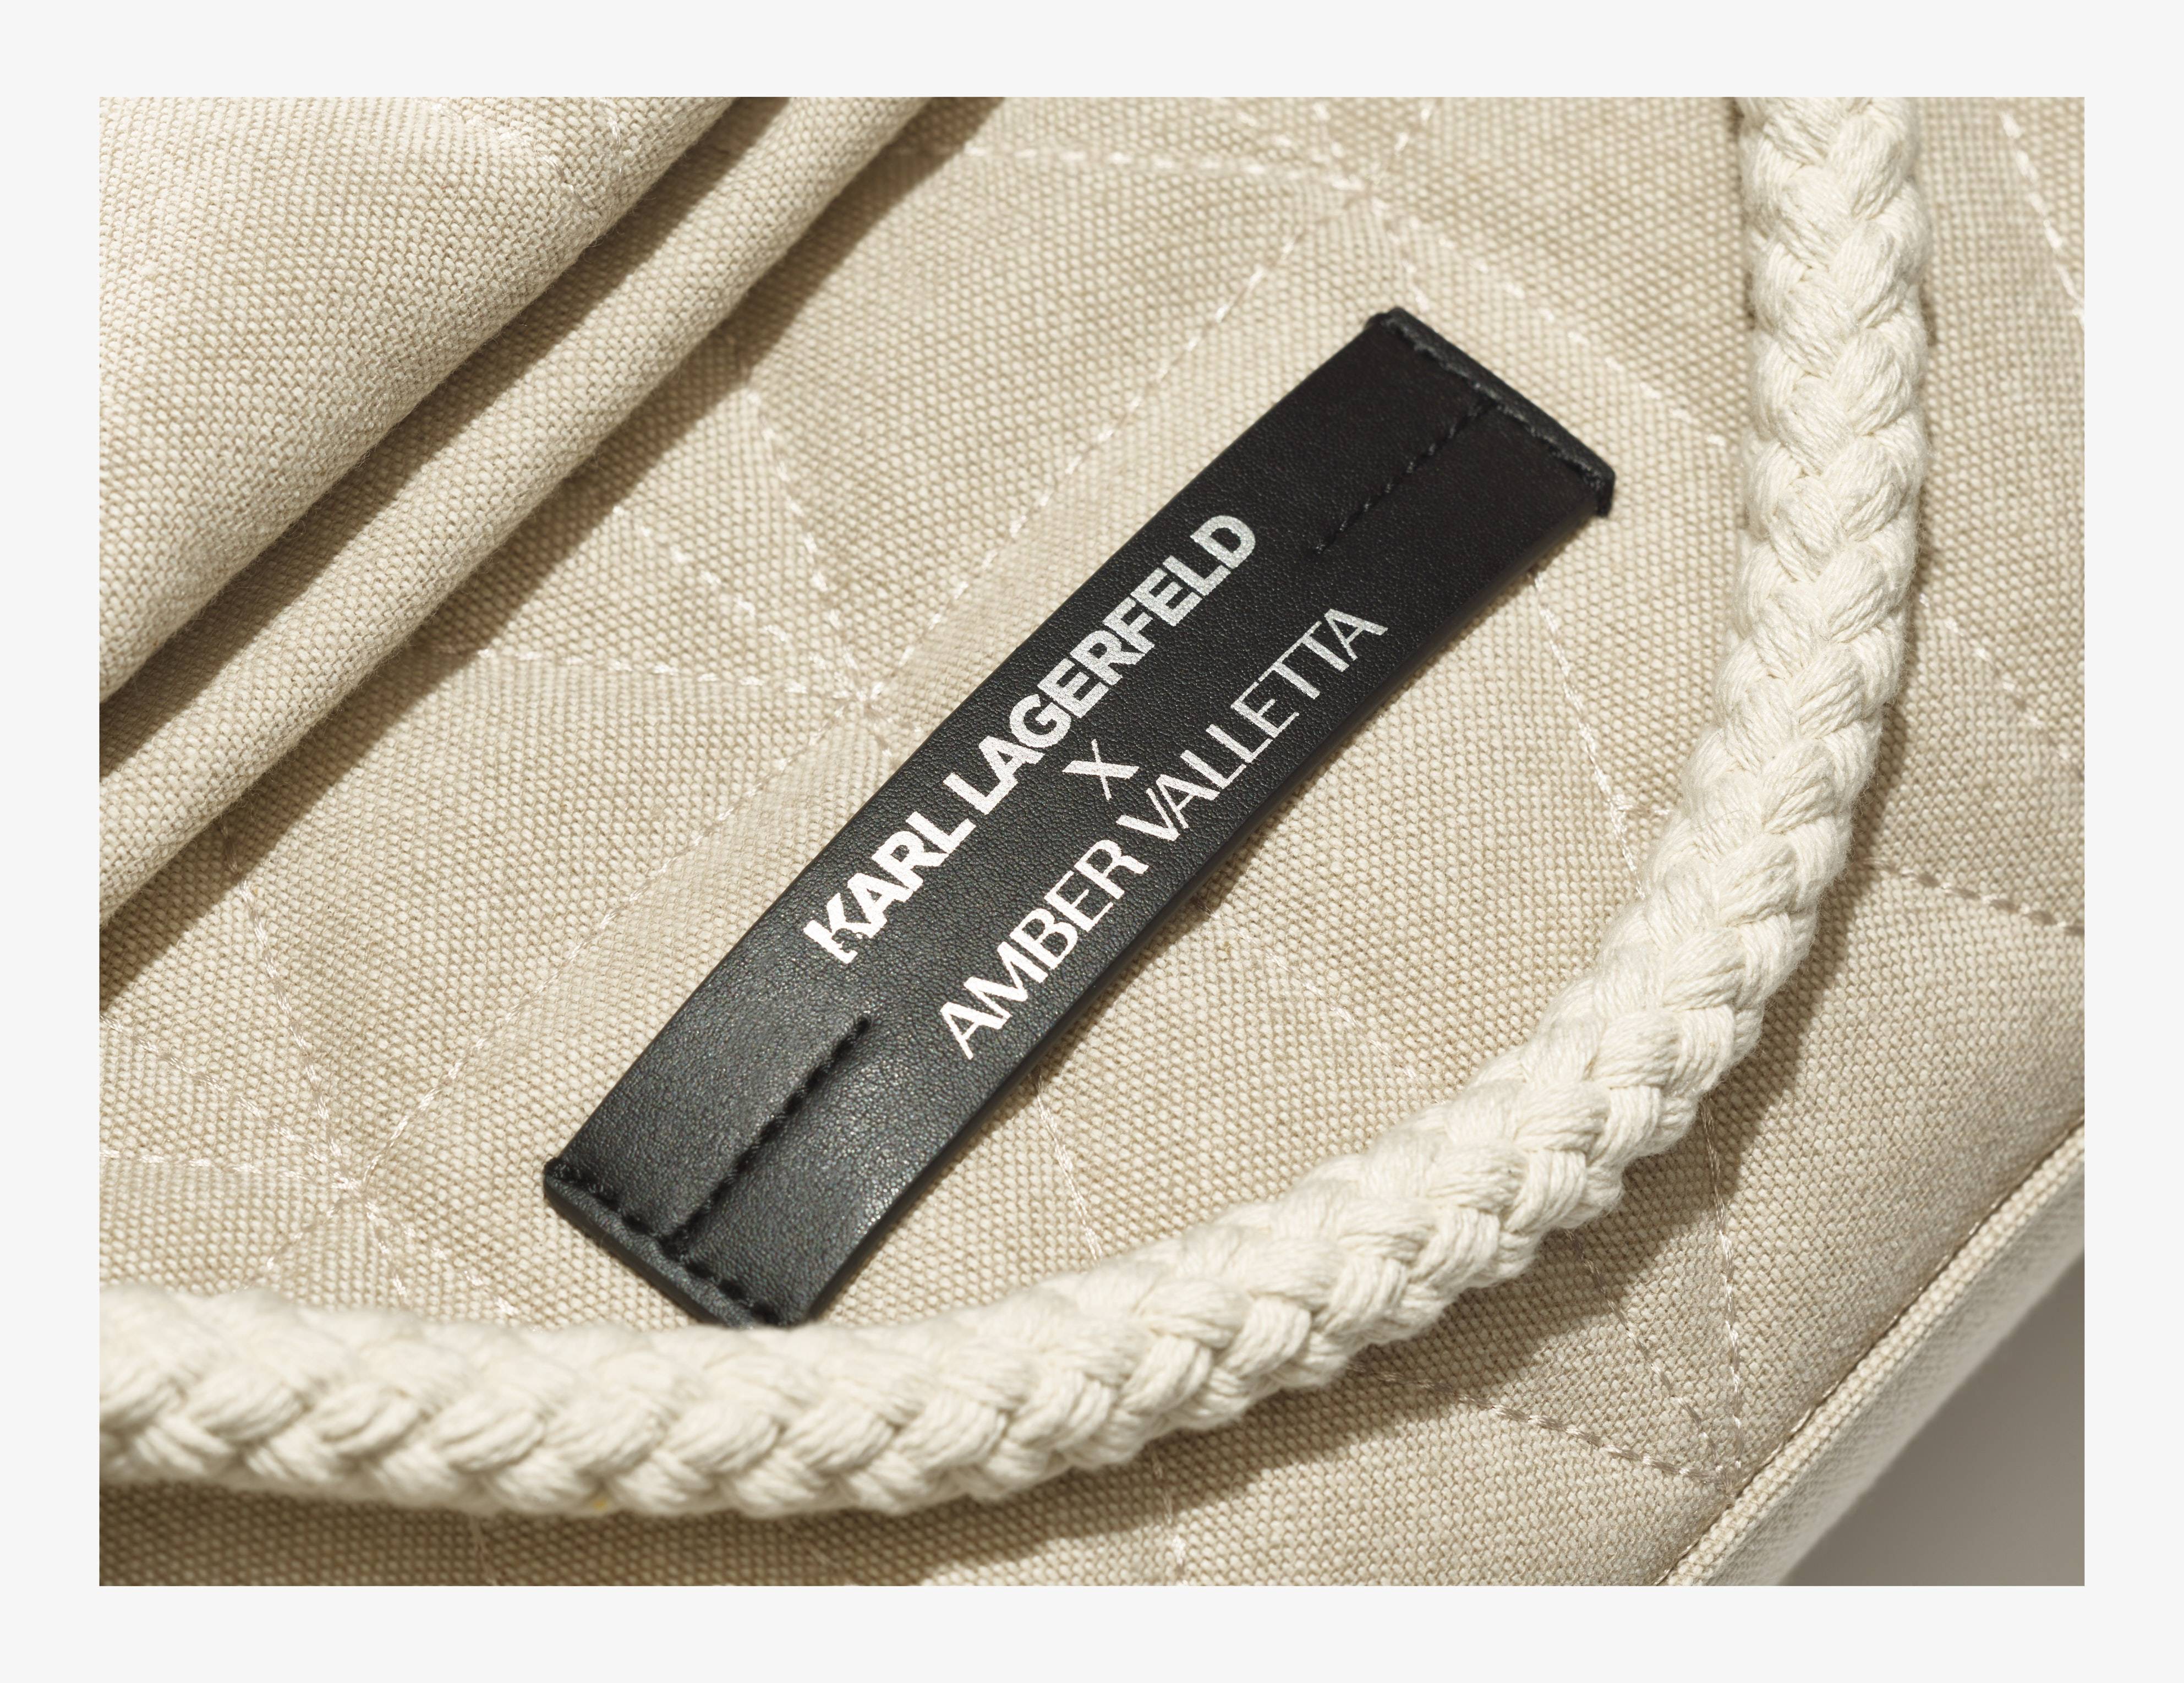 Karl Lagerfeld x Amber Valletta : une collection de sacs écoresponsables